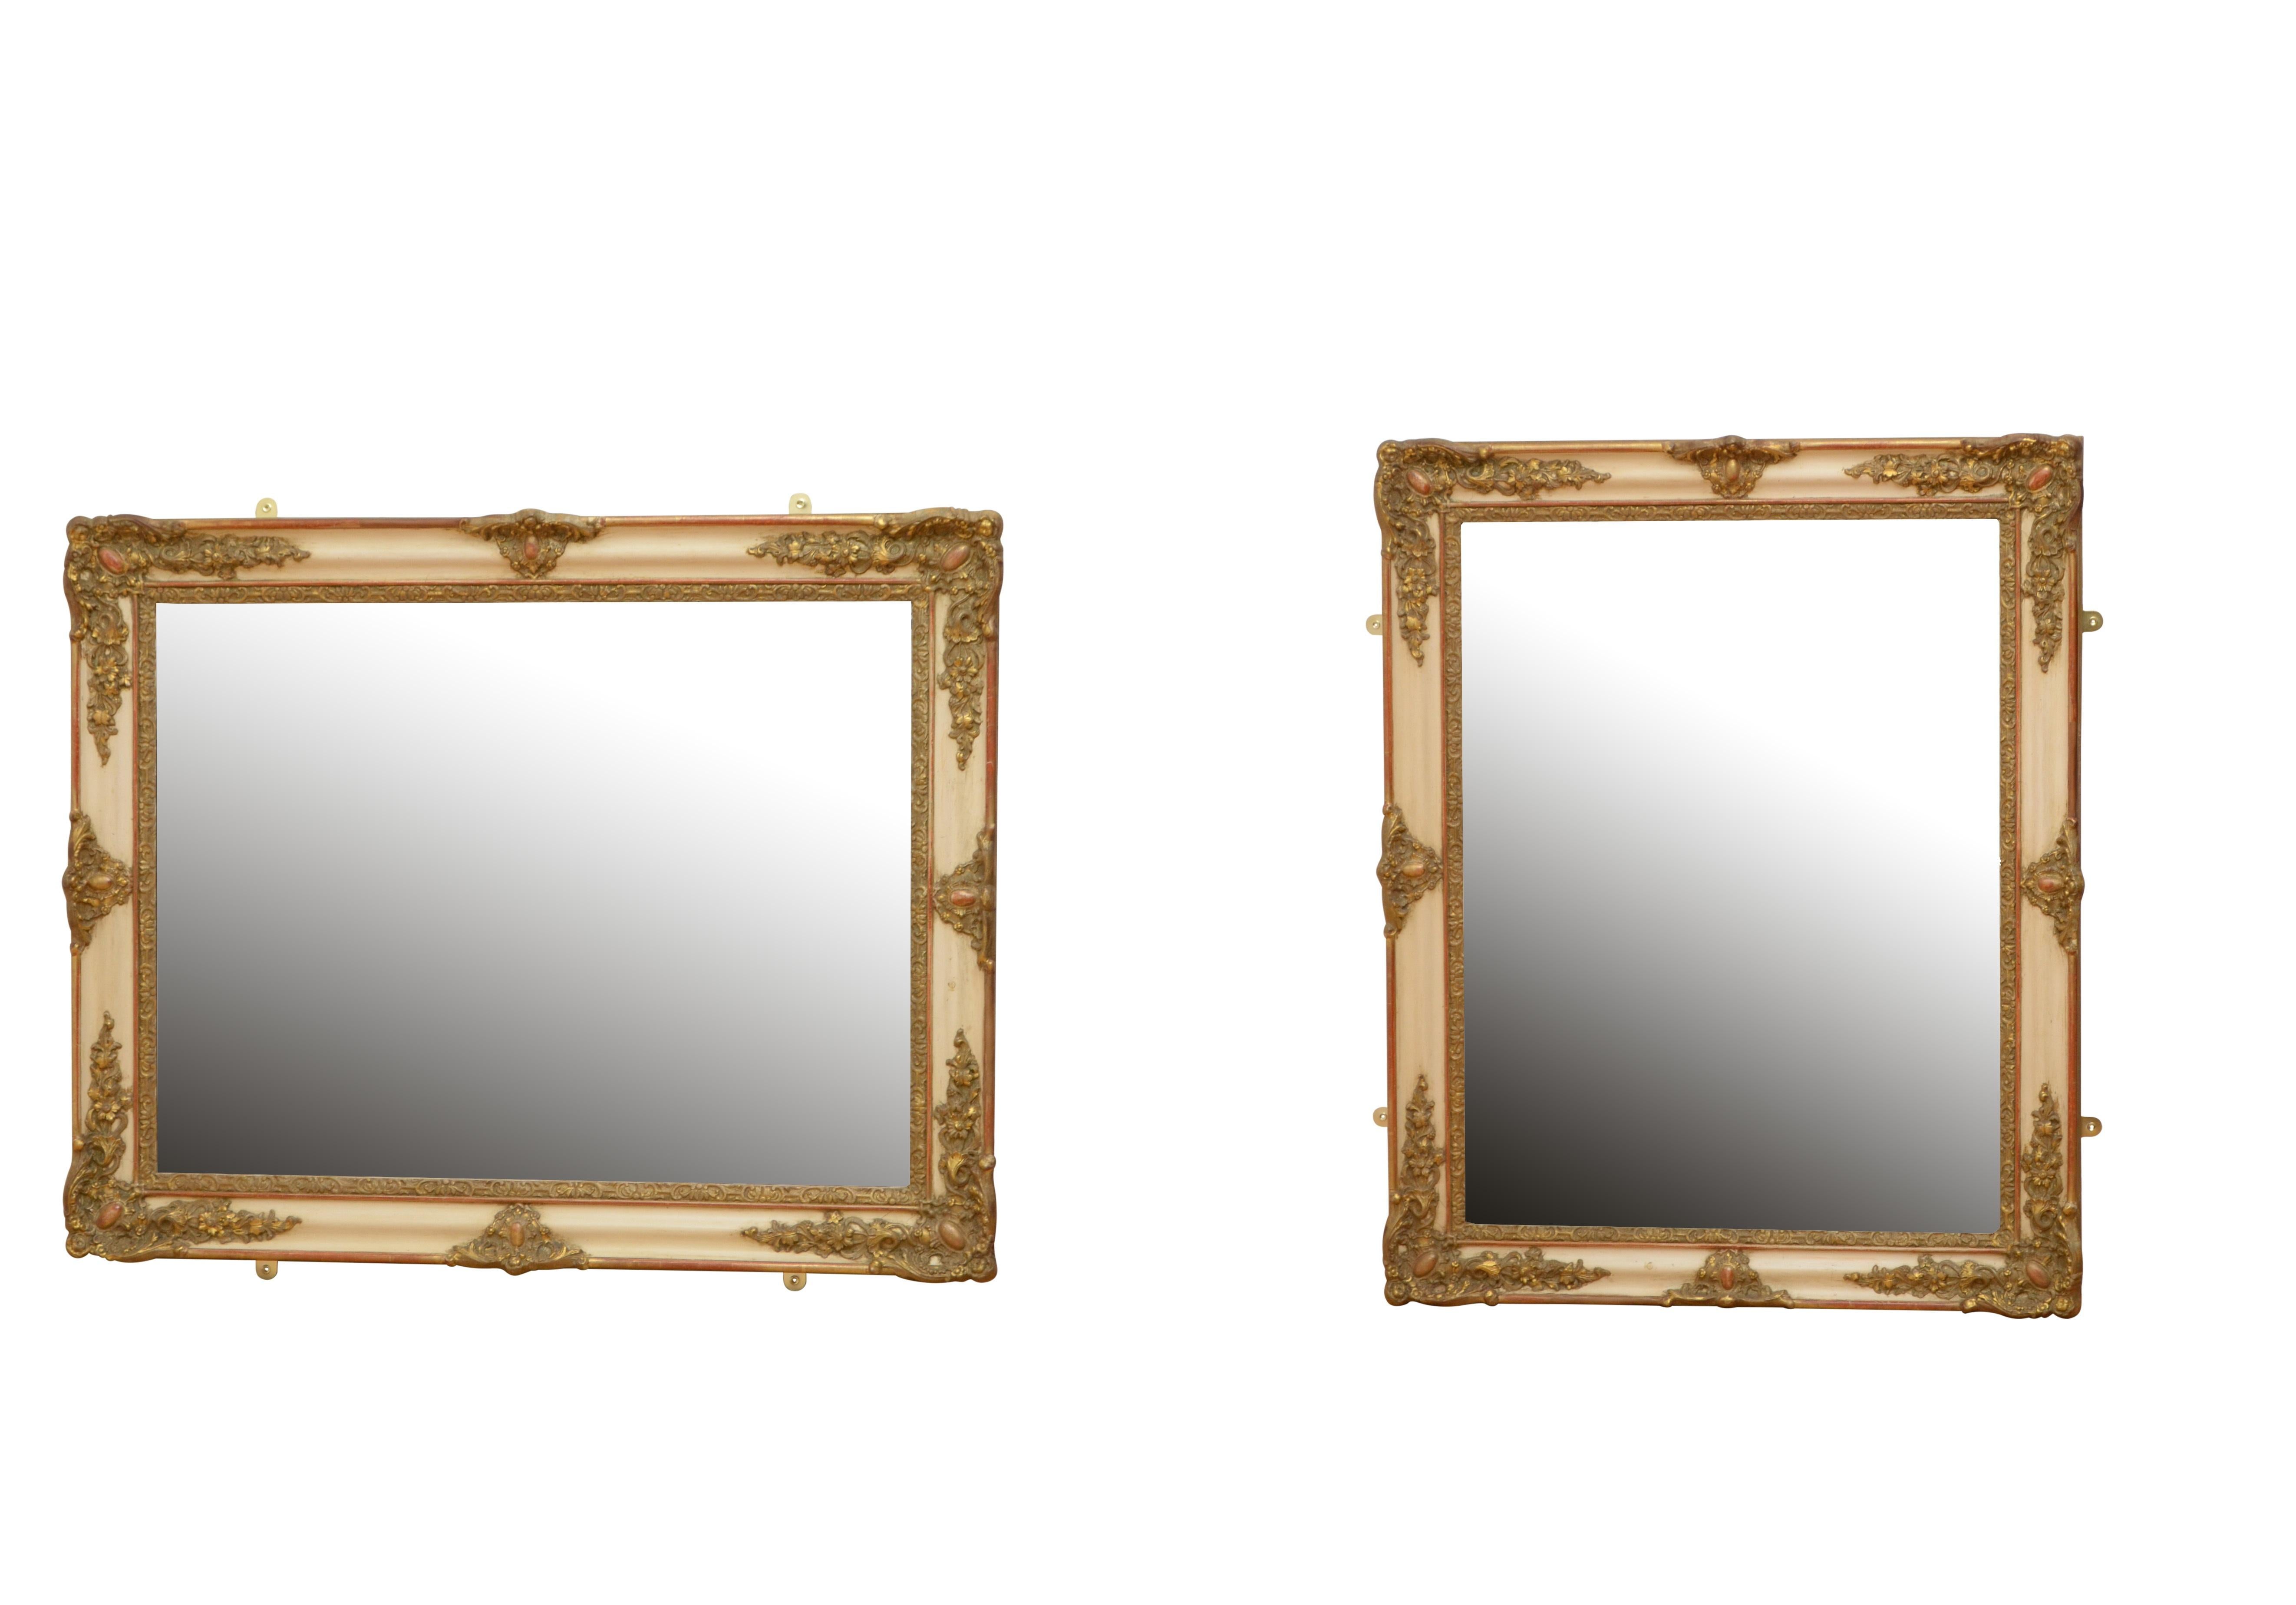 K0461 Miroir mural du 19e siècle de forme polyvalente pouvant être positionné en portrait ou en paysage, avec plaque de miroir d'origine présentant de superbes rousseurs dans un cadre magnifiquement sculpté et doré. Ce miroir doré ancien conserve